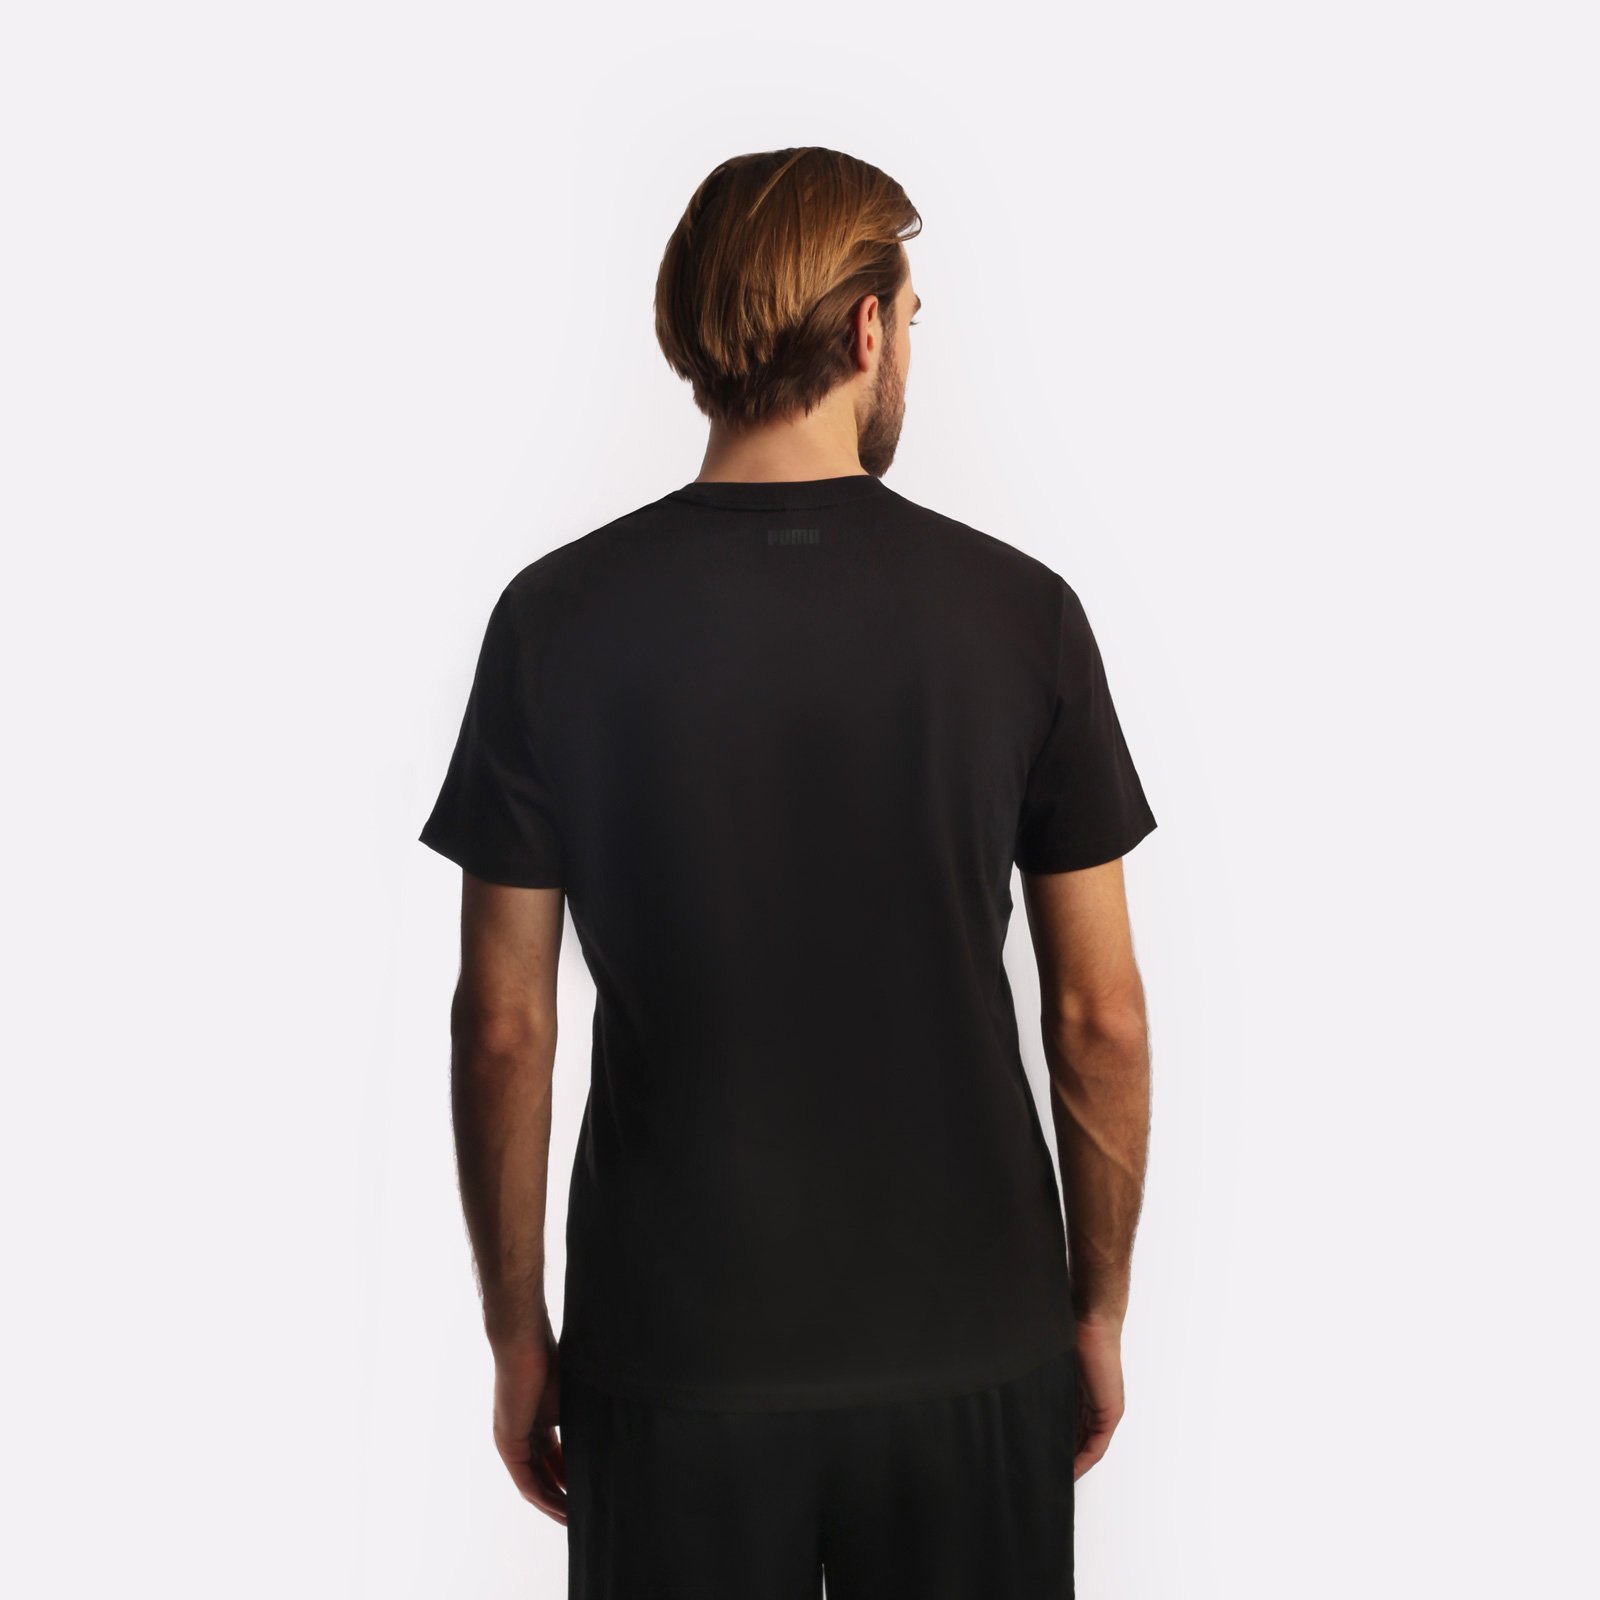 мужская черная футболка PUMA Franchise Core Tee 53856901 - цена, описание, фото 2